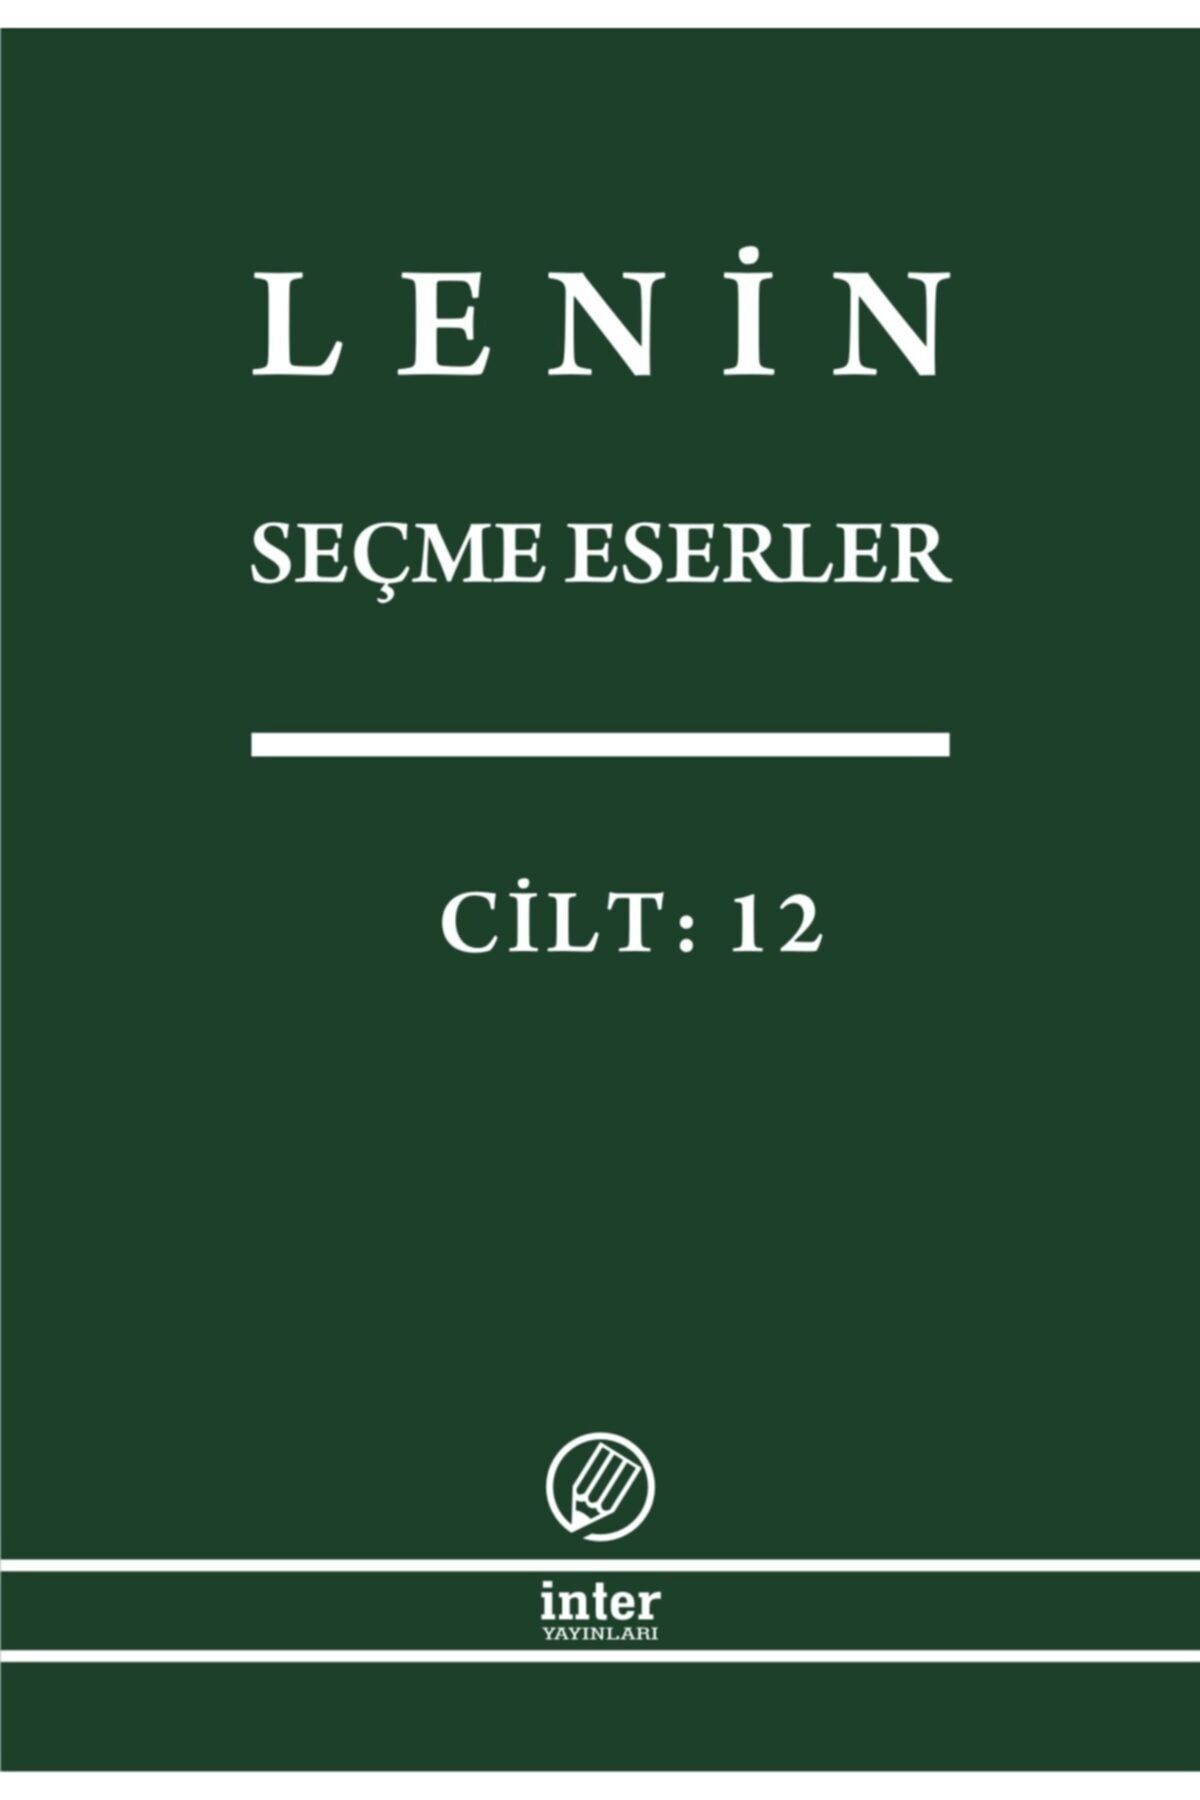 İnter Yayınları Lenin Seçme Eserler Cilt 12